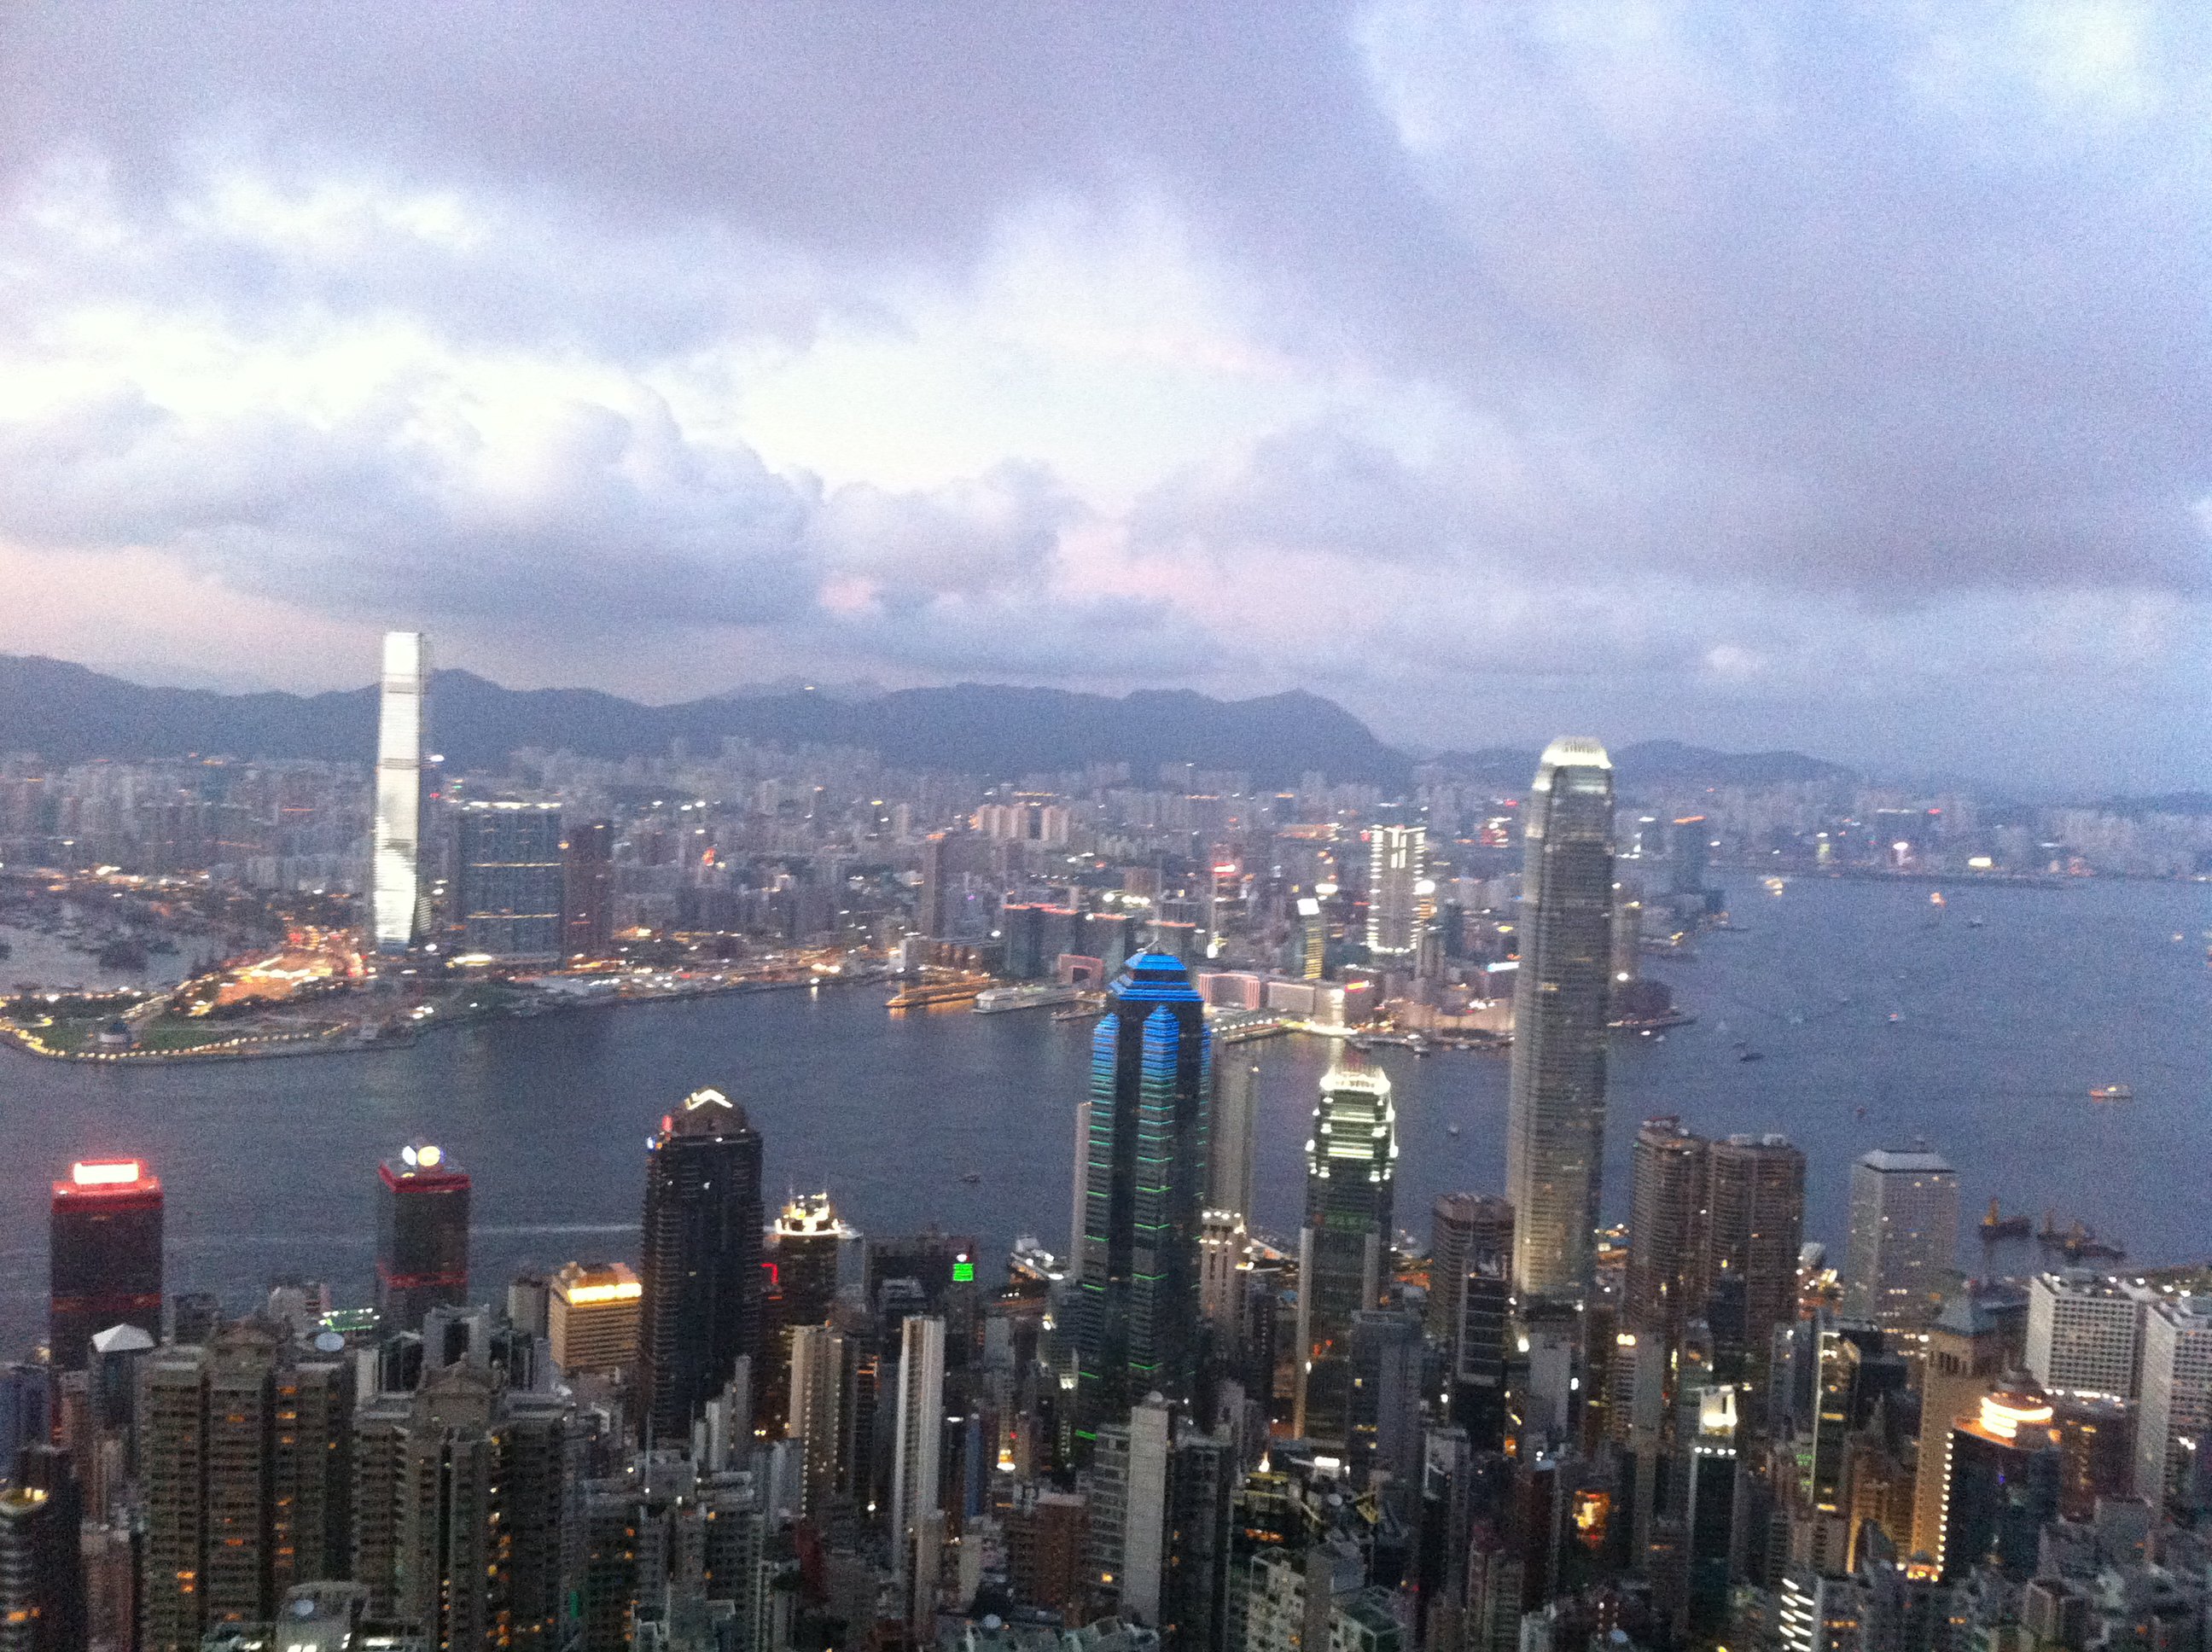 【携程攻略】香港天际100香港观景台景点,登上香港著名的室内观景台天际100鸟瞰全港，不仅壮观的楼景尽收眼底…